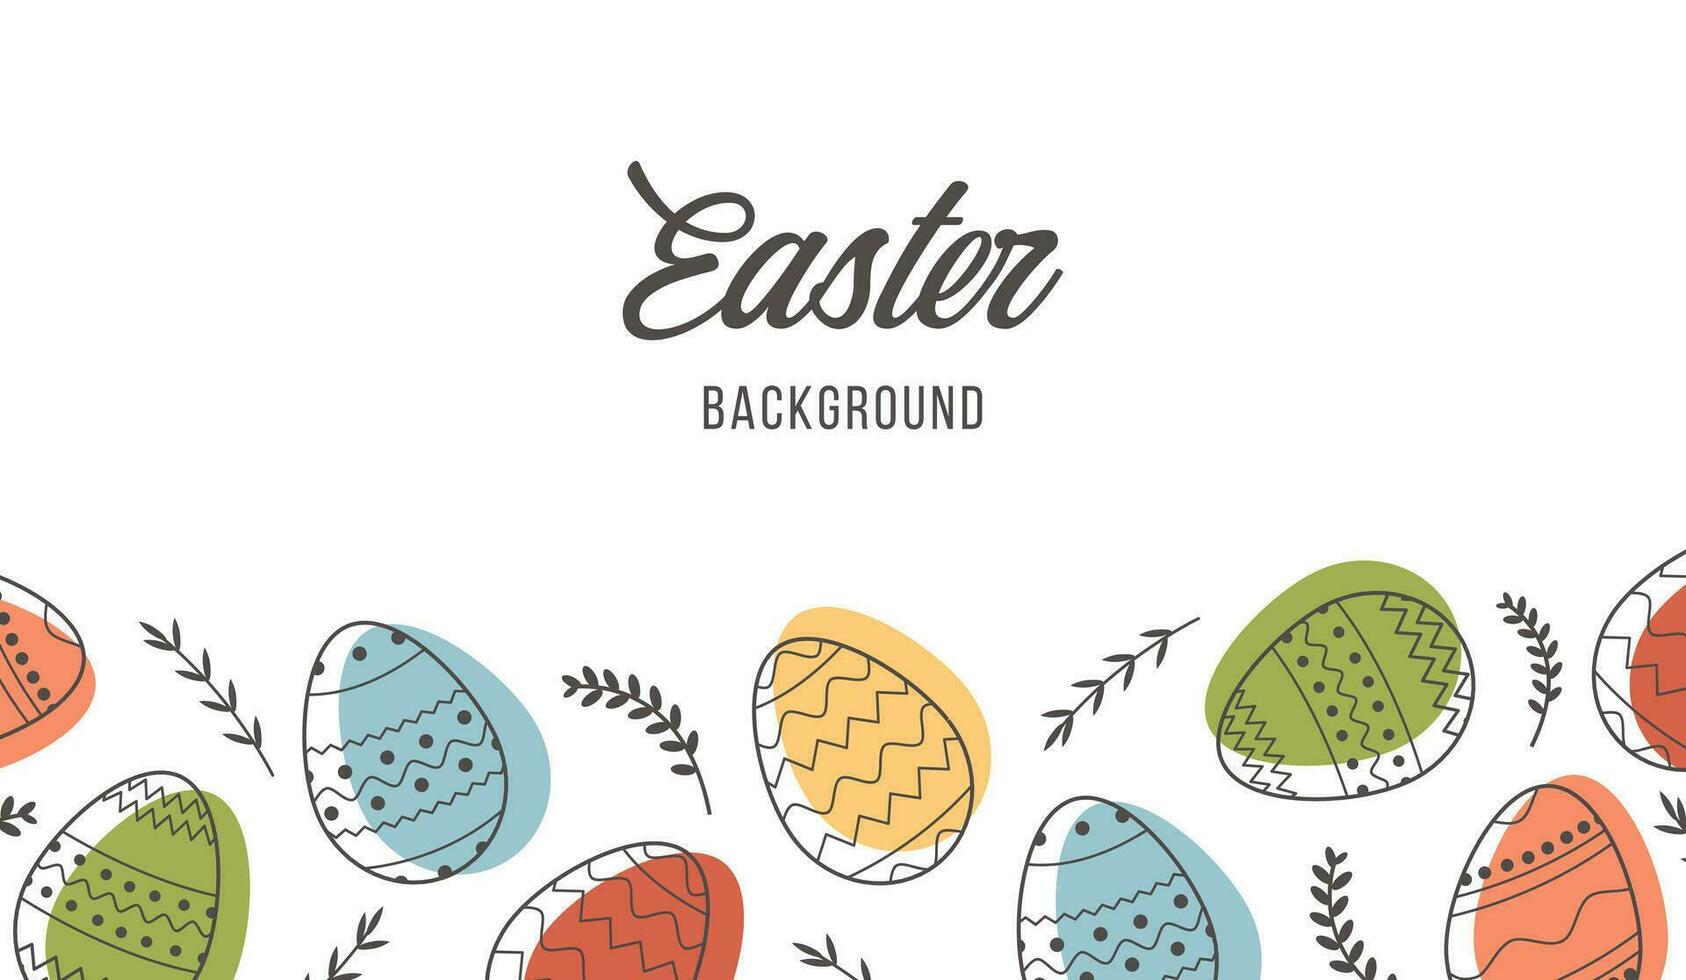 festlig baner mall med trendig skisse geometrisk mönster på påsk ägg. dekorativ horisontell rand från ägg med löv på vit bakgrund. vektor affisch för vår Semester firande.